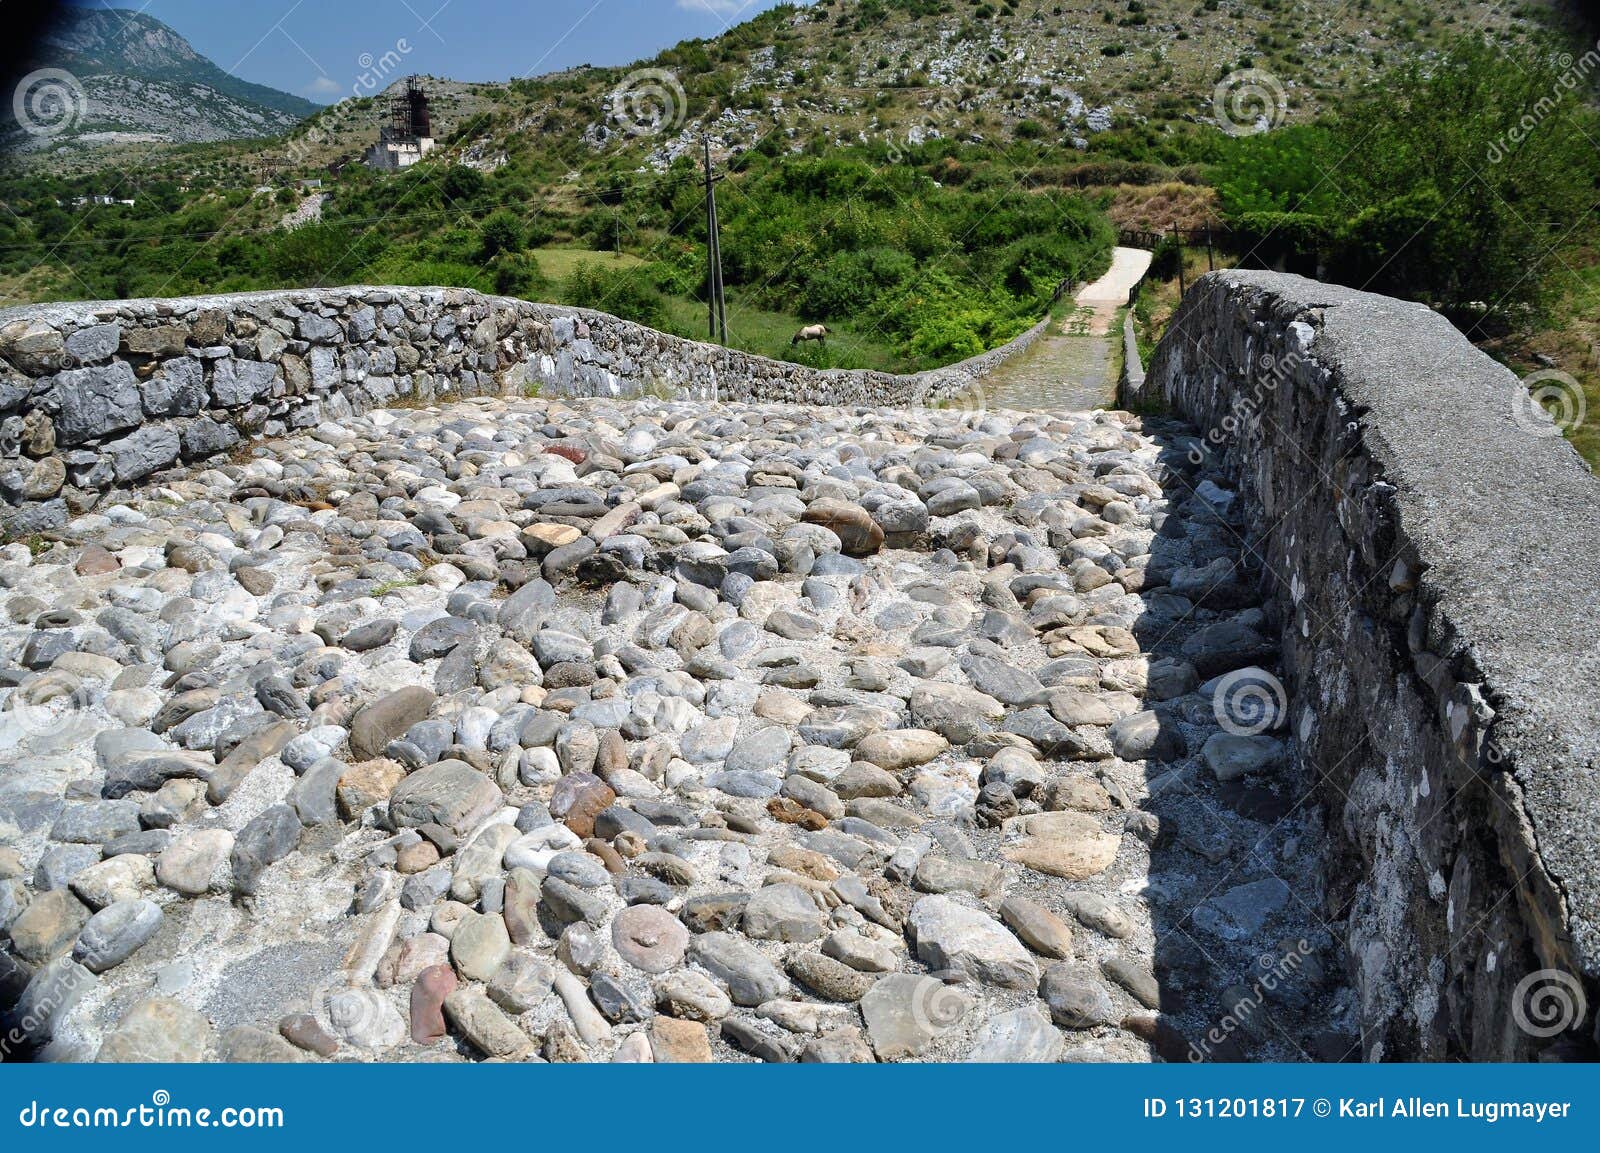 the famous mesi bridge in mes, albania